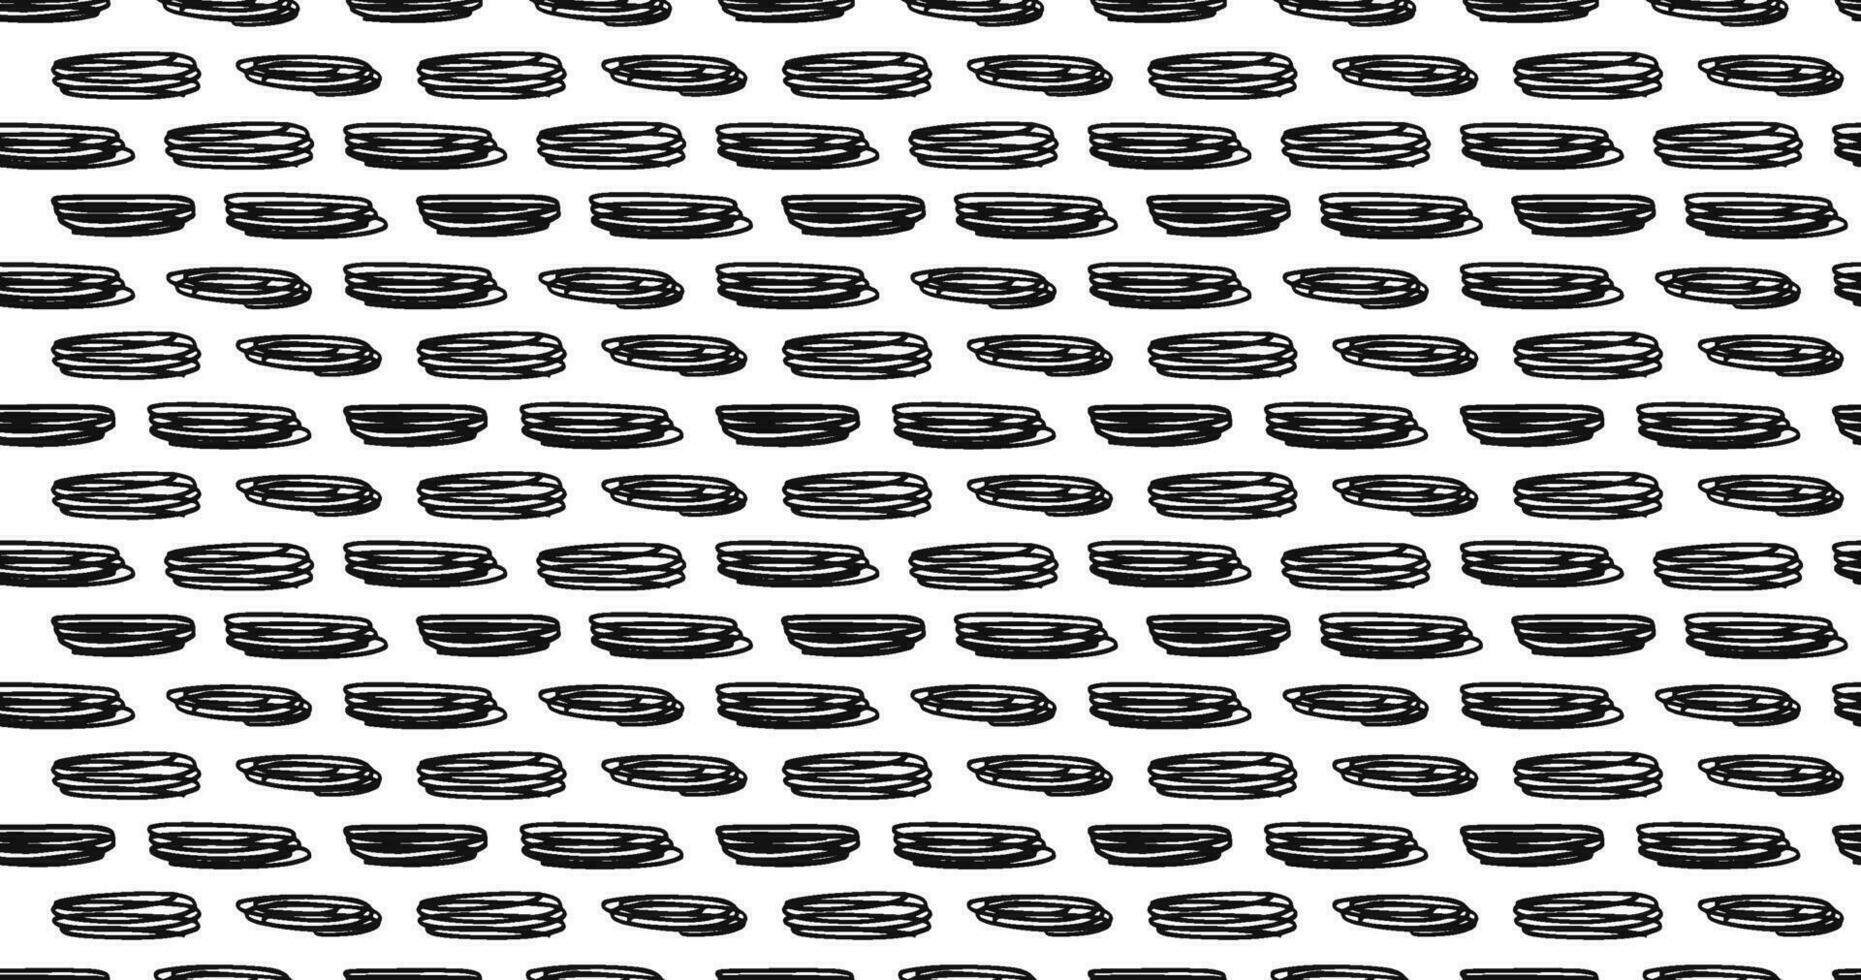 klein scheutje naadloos patroon stippel lijnen textuur. zwart en wit uitkomen tekening biologisch vormen kort lijn streepjes borstel hand- getrokken willekeurig beroertes mode retro afdrukken ontwerp vector illustratie